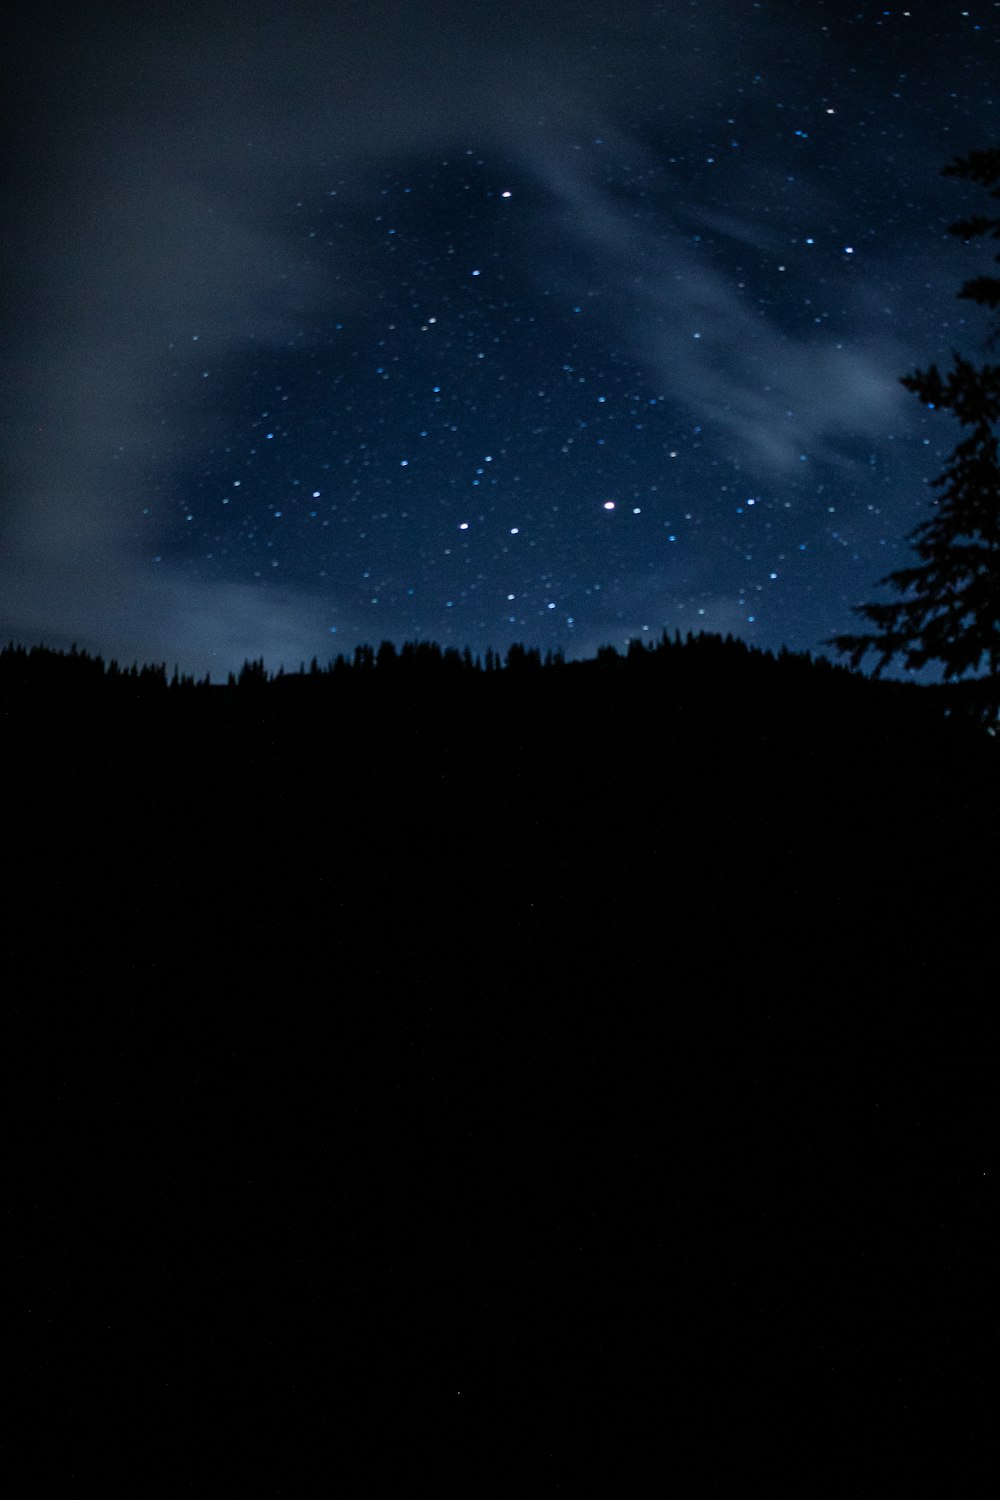 Ein sternenklarer Nachthimmel über Bäumen